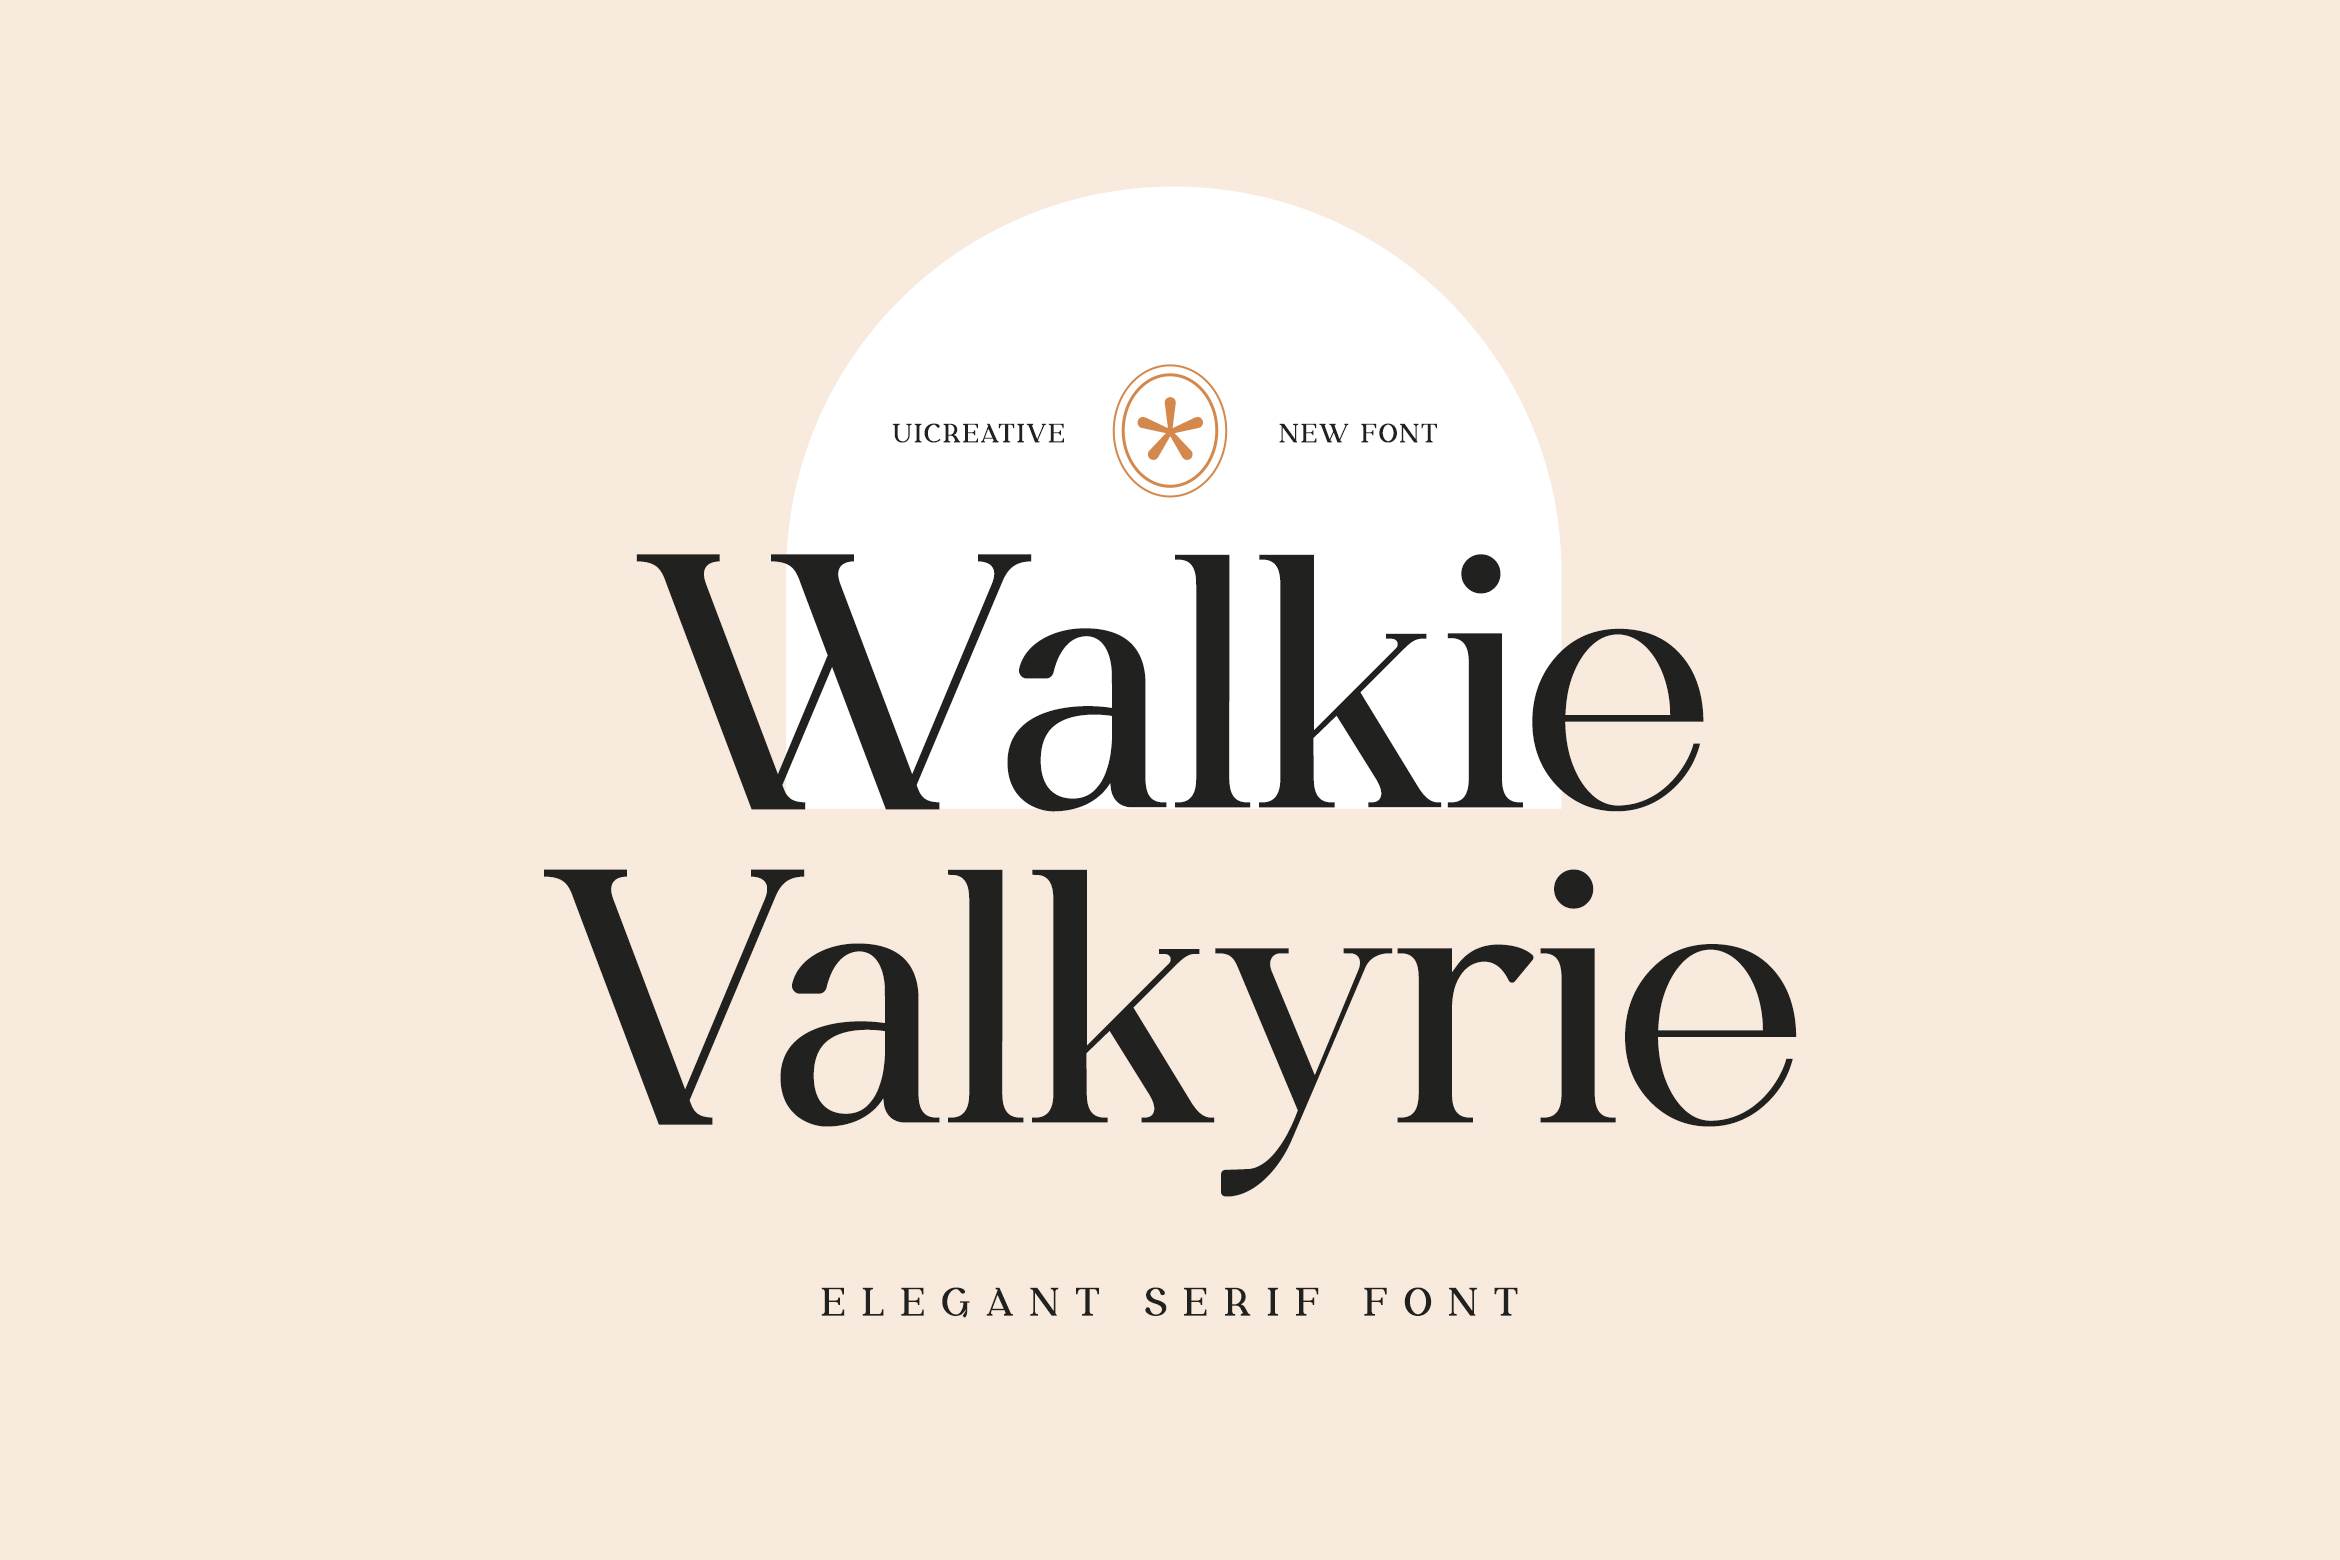 Ejemplo de fuente Walkie Valkyrie